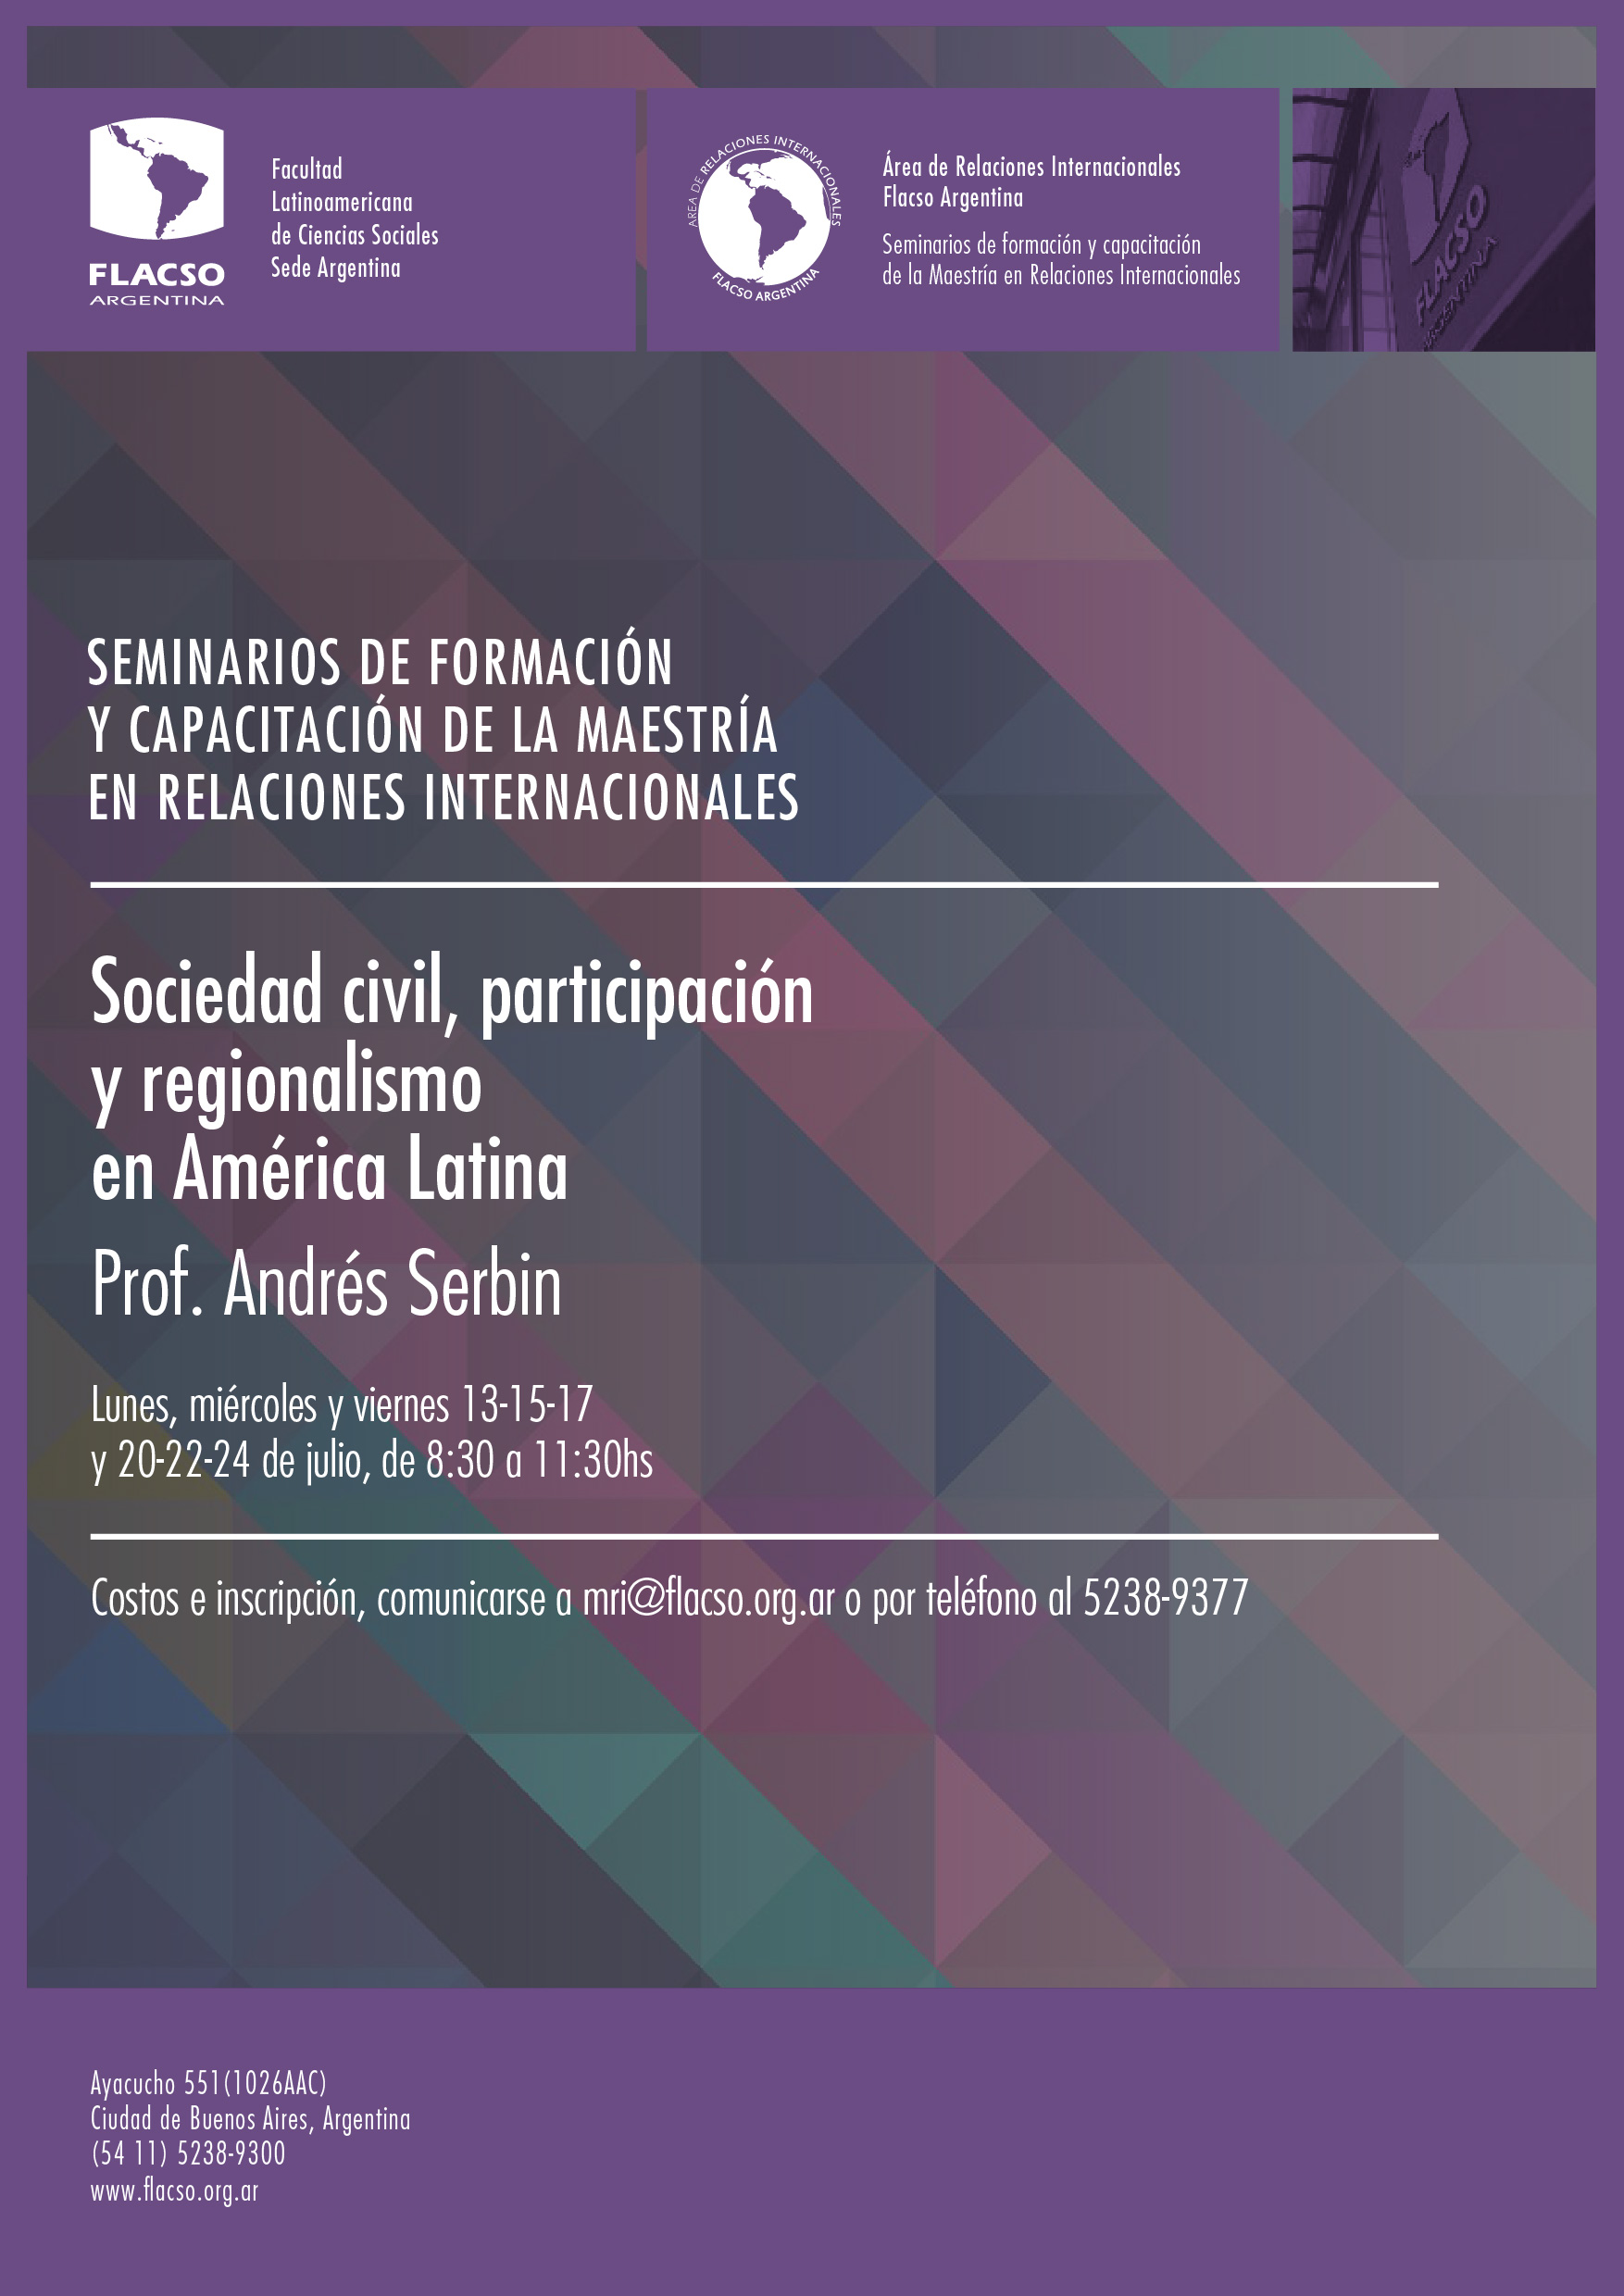 Dr. Serbin – Seminario: Sociedad civil, participación y regionalismo en América Latina